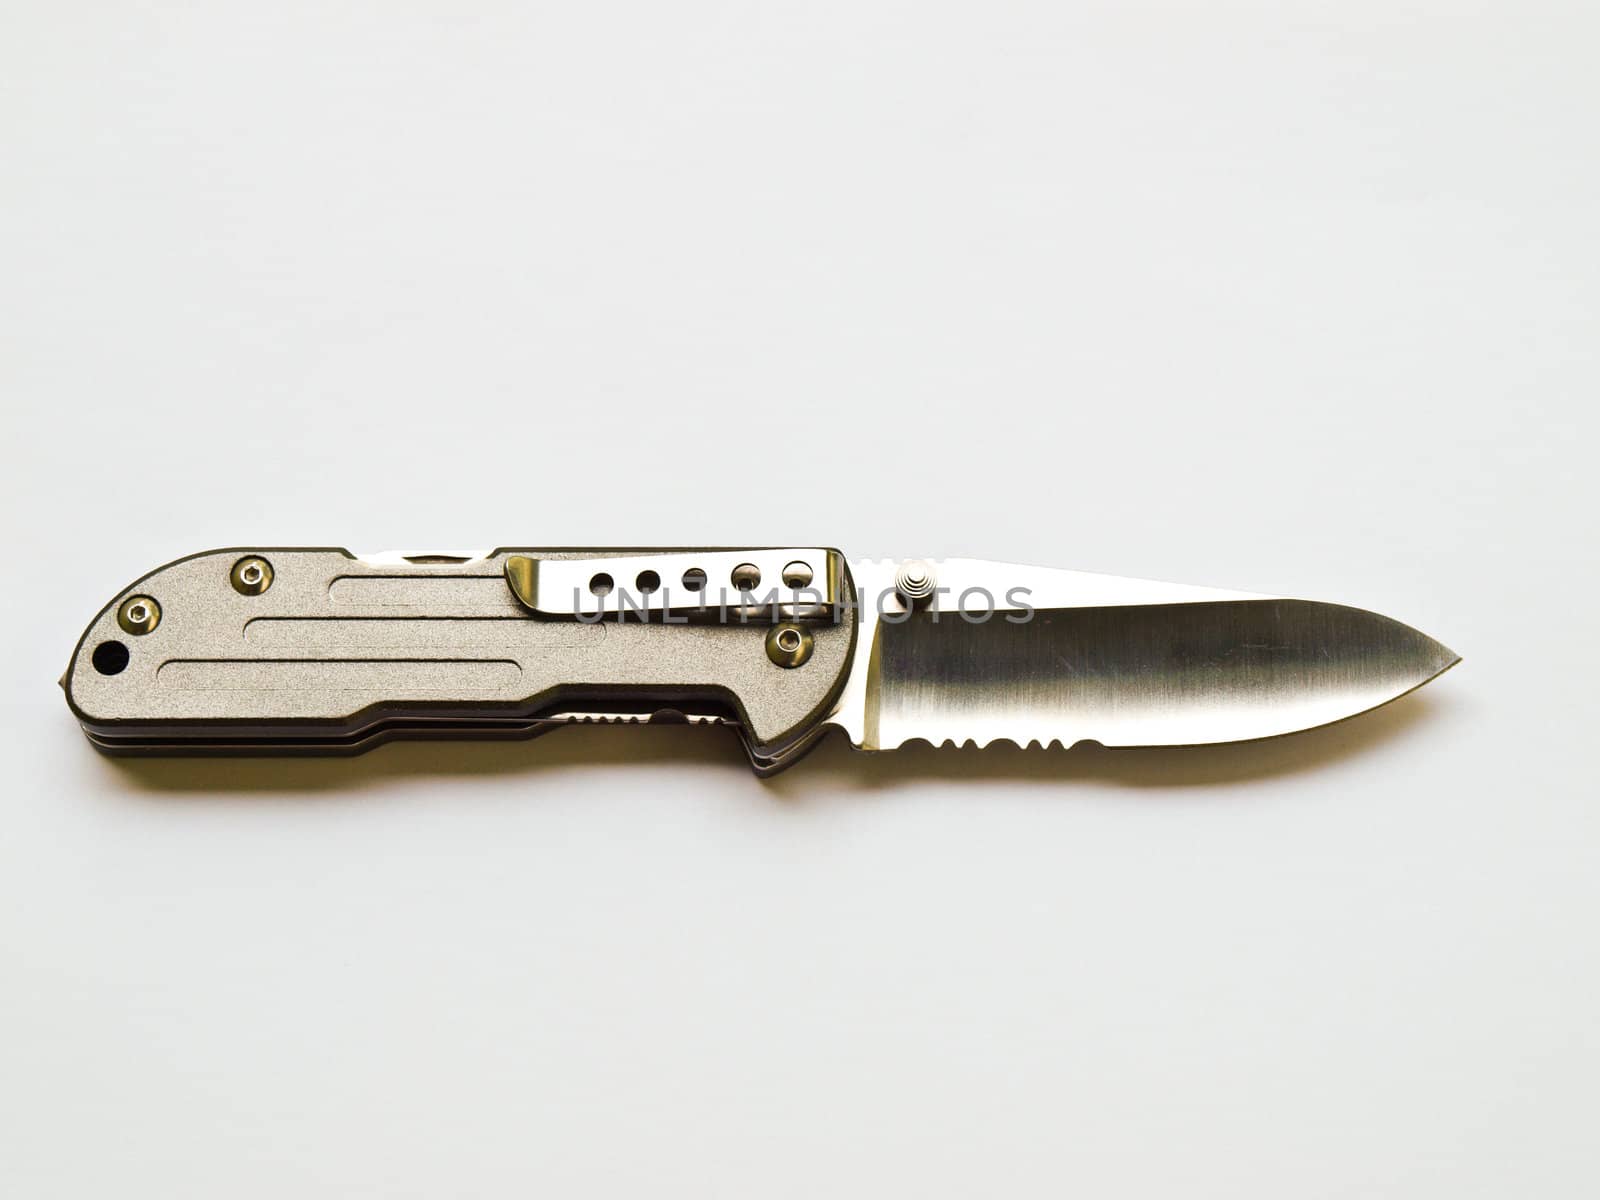 knife isolated on white background